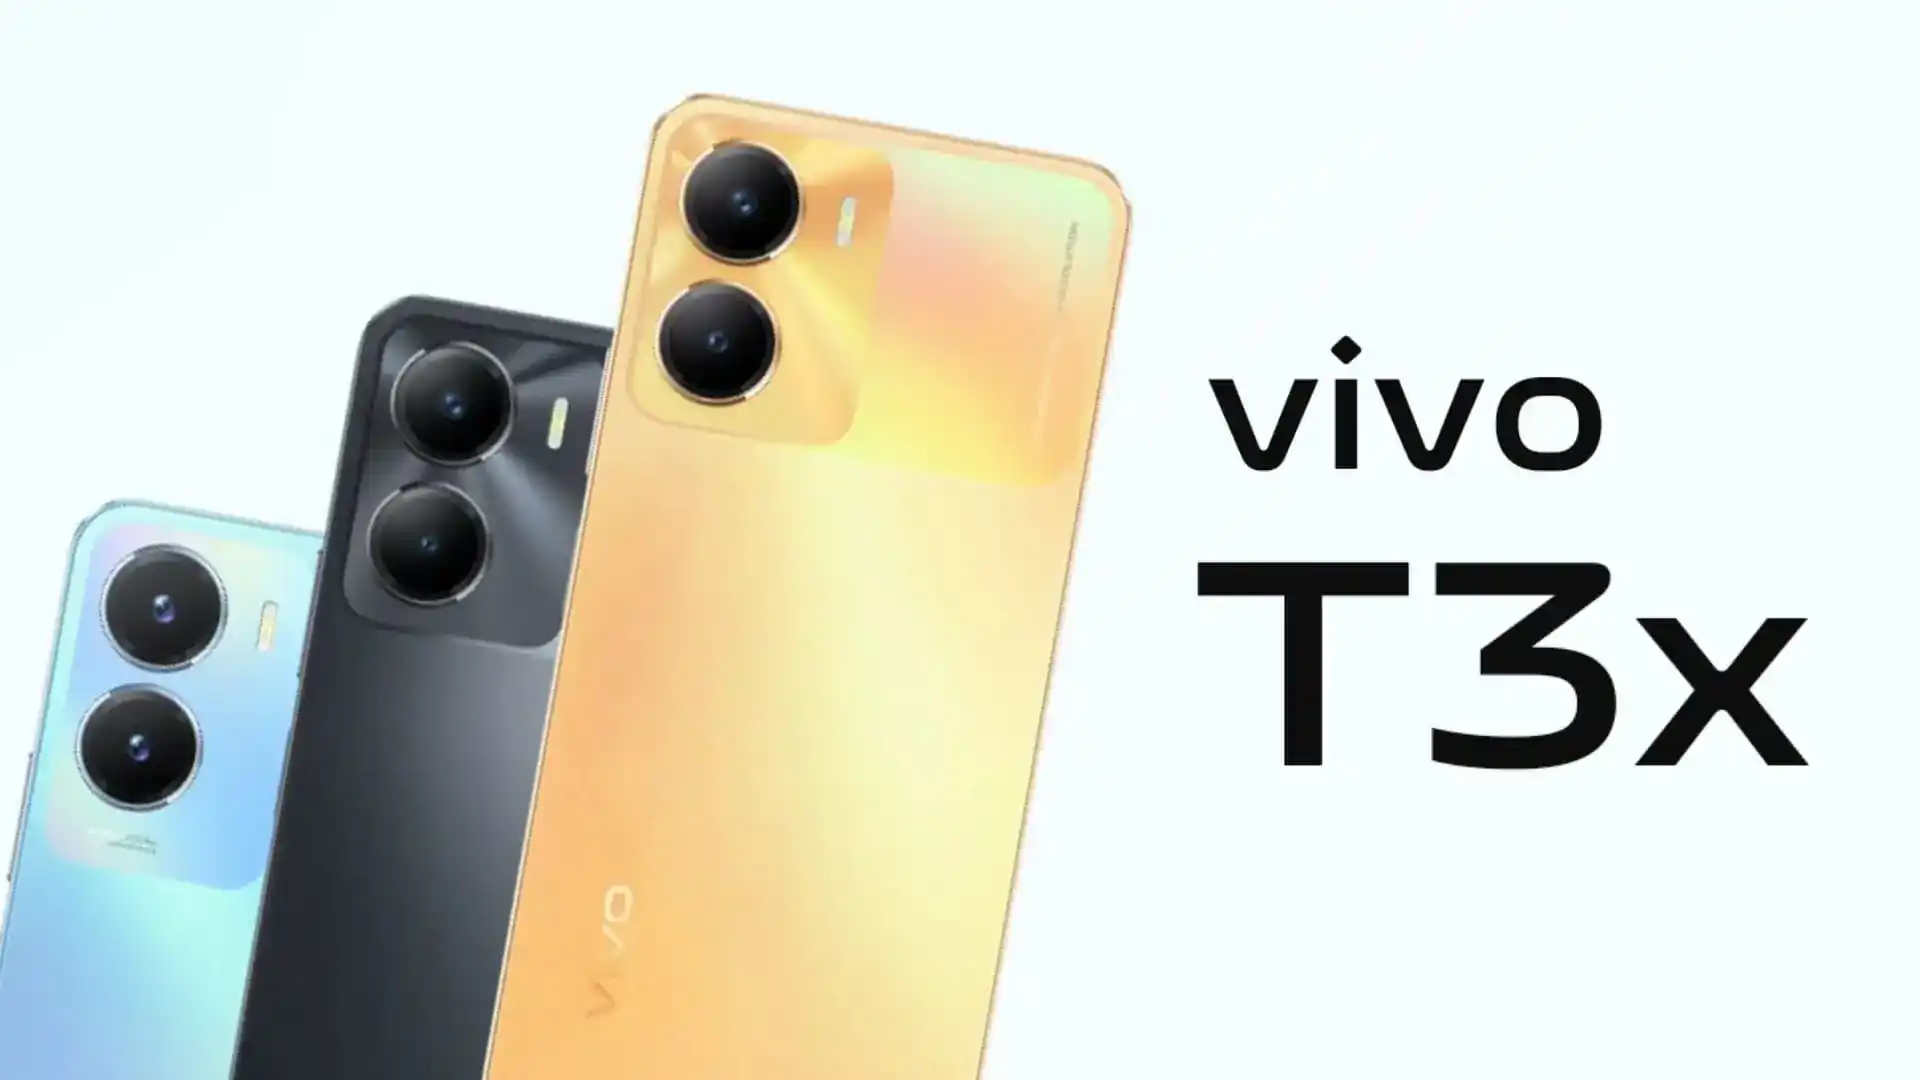 Vivo prepara el lanzamiento de un nuevo smartphone T3x con una potente batería y procesador Snapdragon